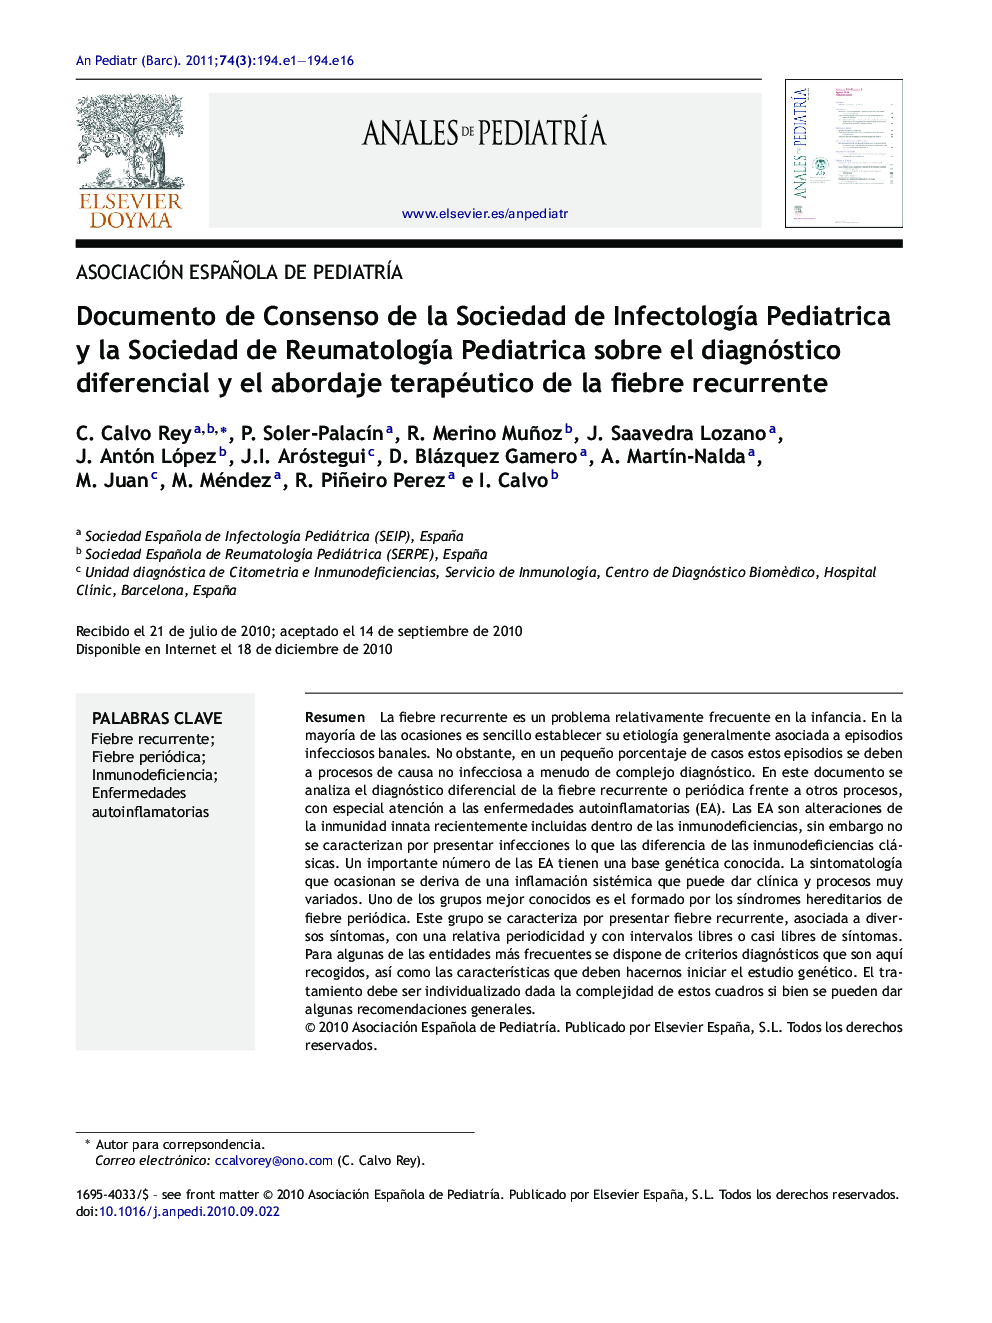 Documento de Consenso de la Sociedad de InfectologÃ­a Pediatrica y la Sociedad de ReumatologÃ­a Pediatrica sobre el diagnóstico diferencial y el abordaje terapéutico de la fiebre recurrente